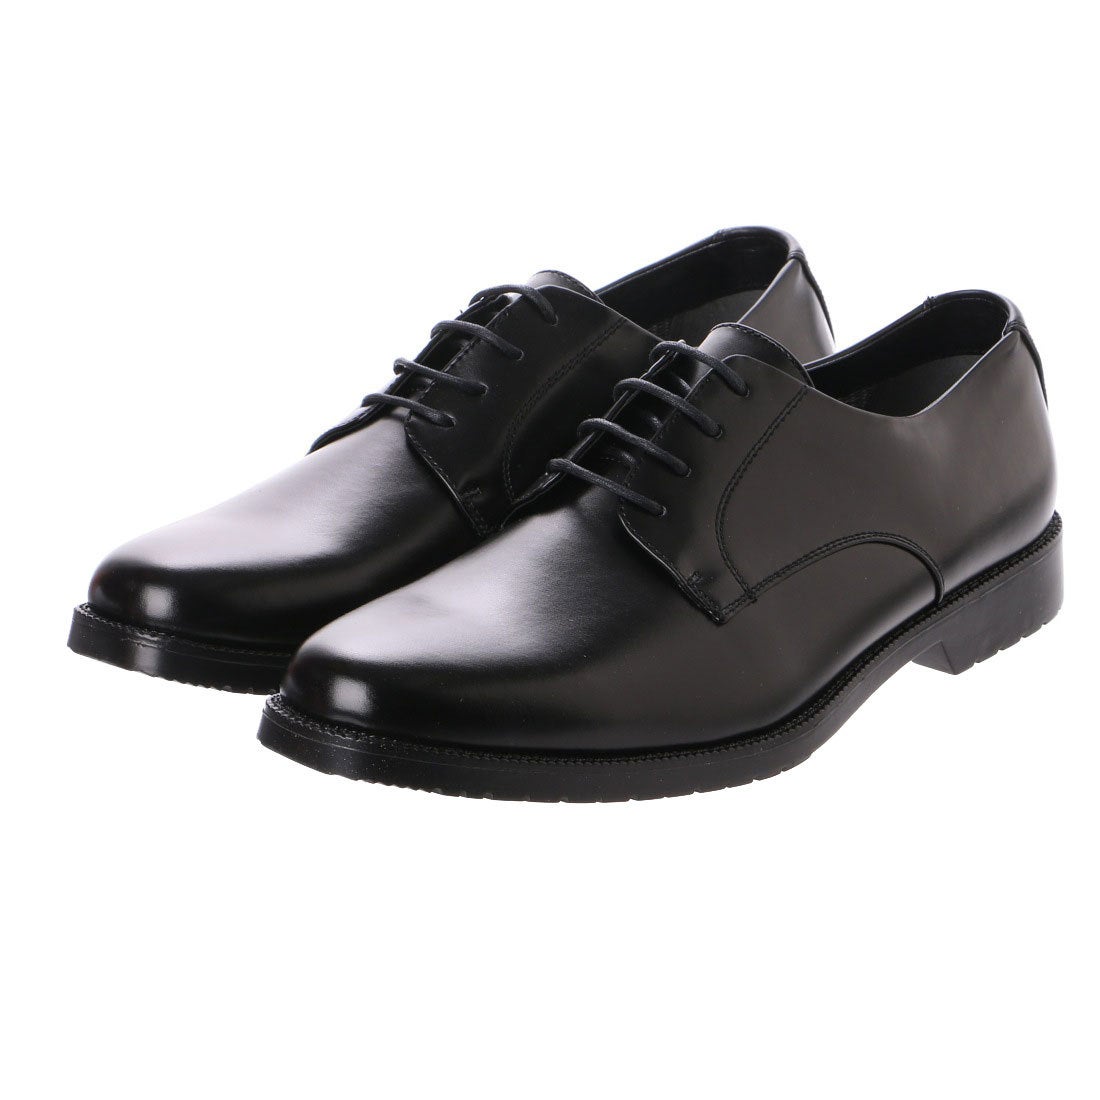 スタークレスト JB601 (ビジネスシューズ・革靴) 価格比較 - 価格.com